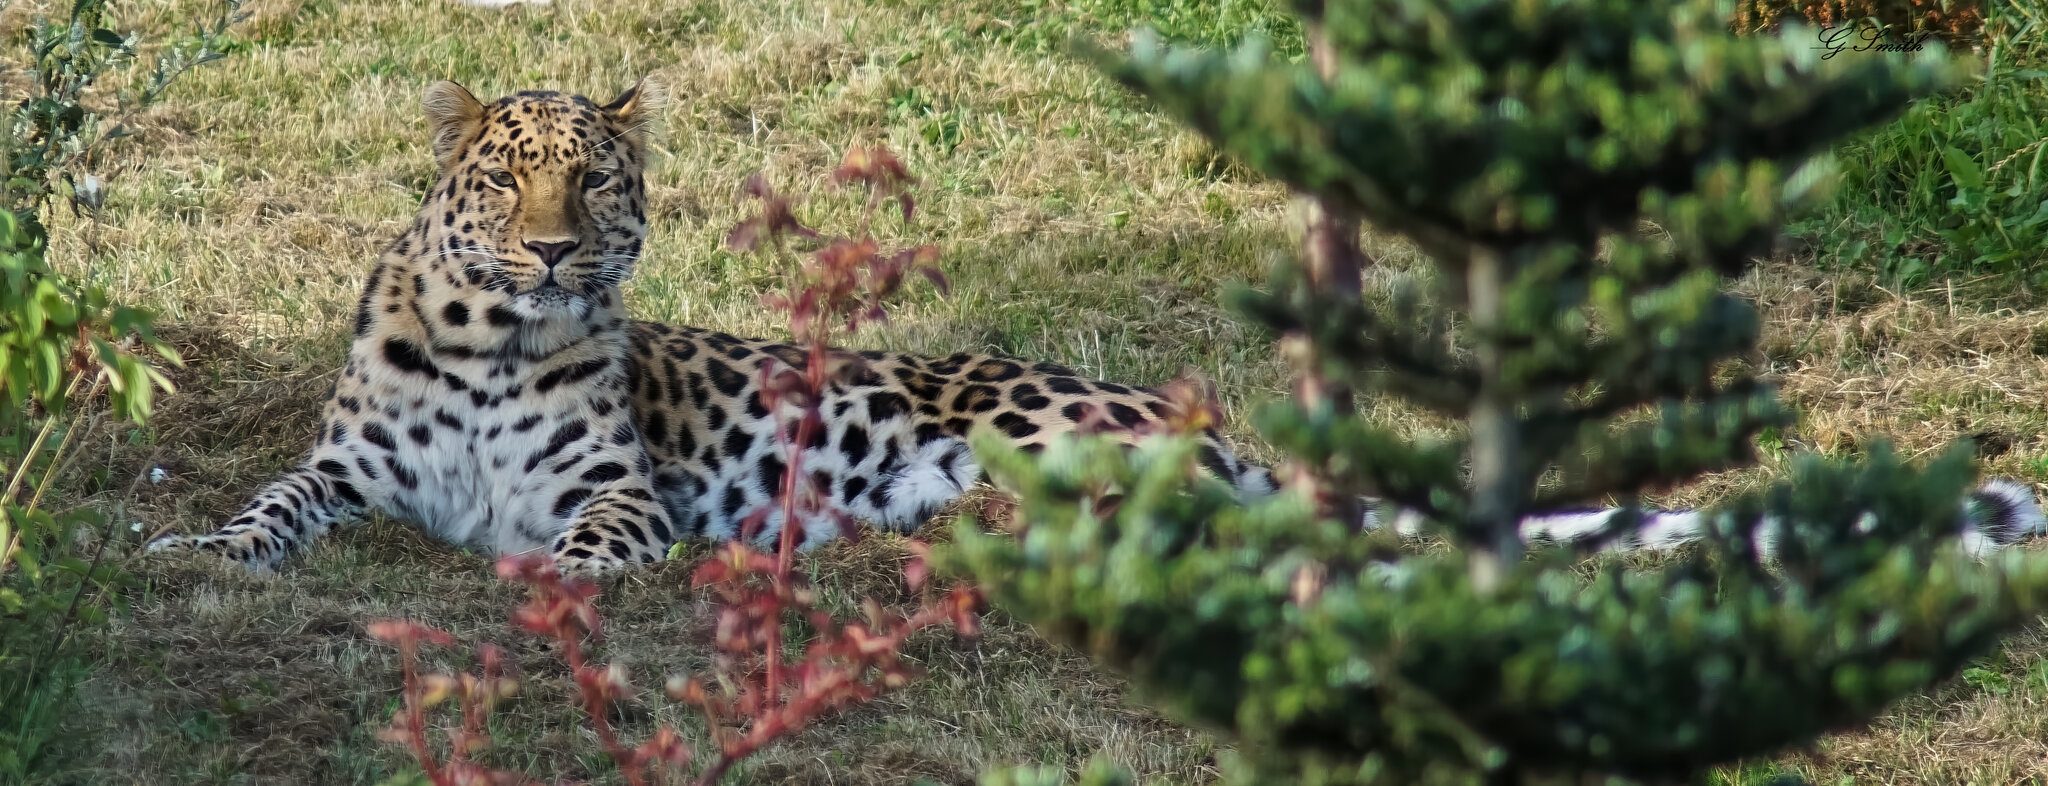 leopard  2016 3.jpg